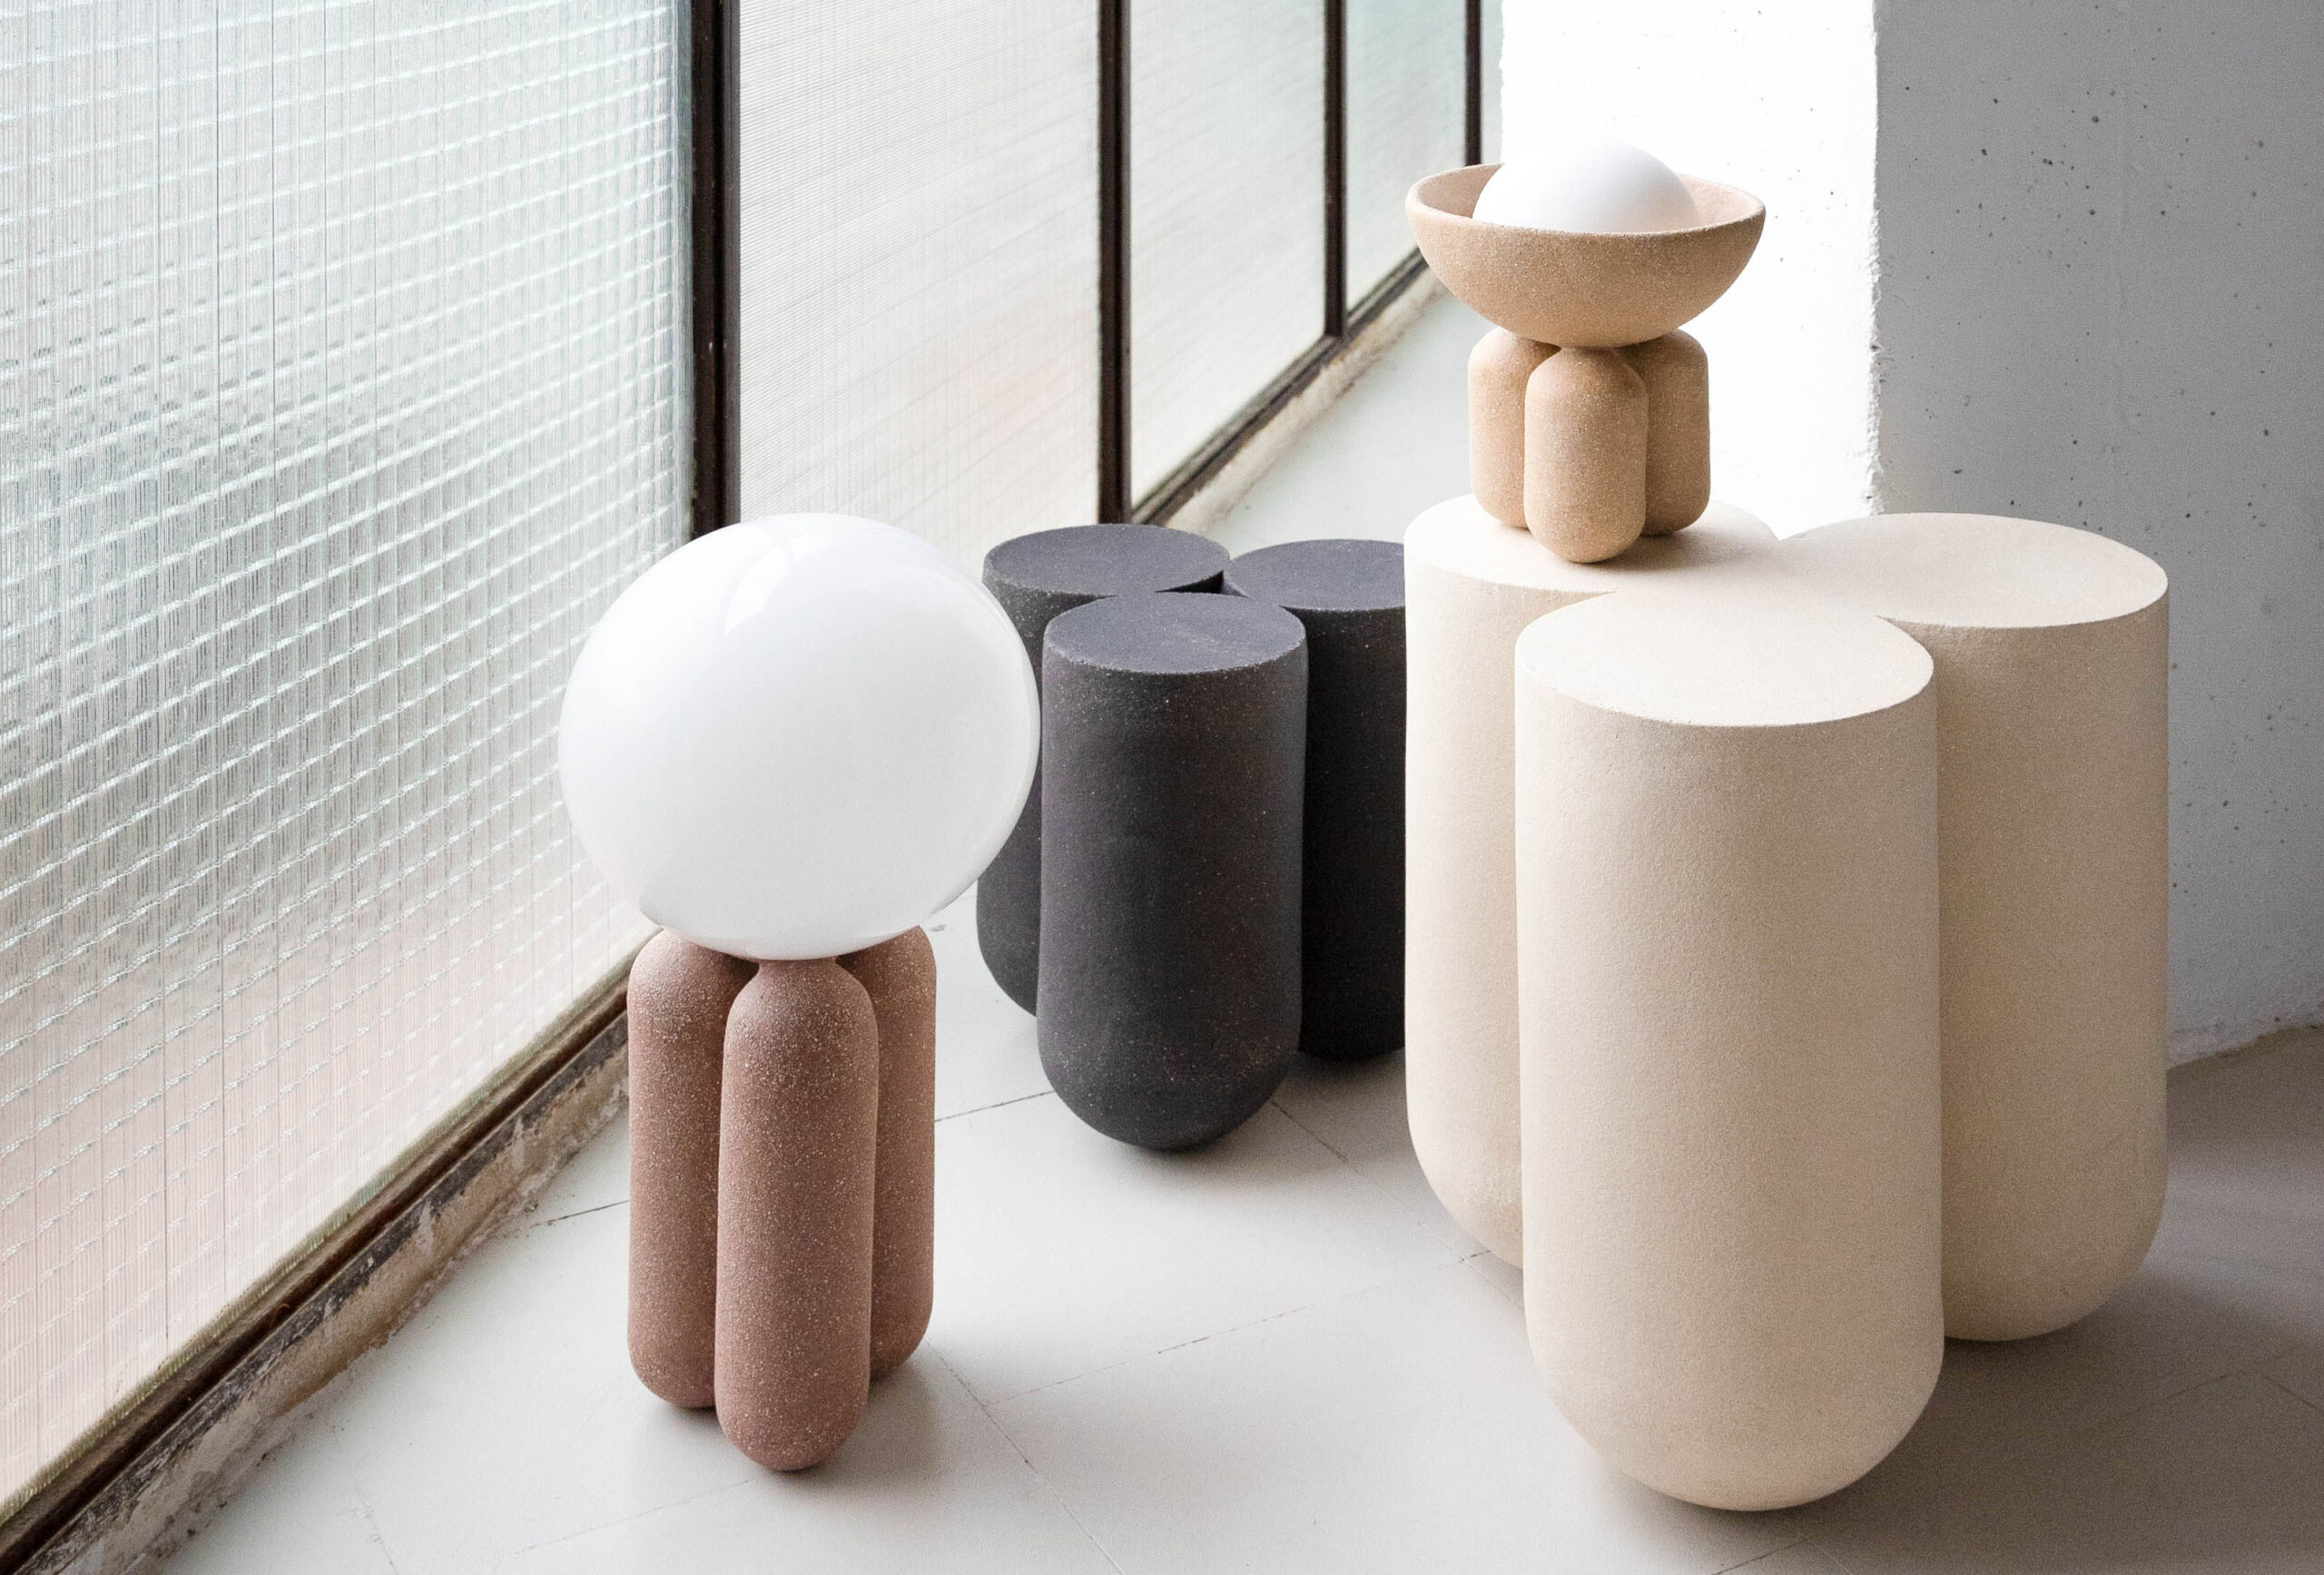 Ceramic furniture - lighting - accessories